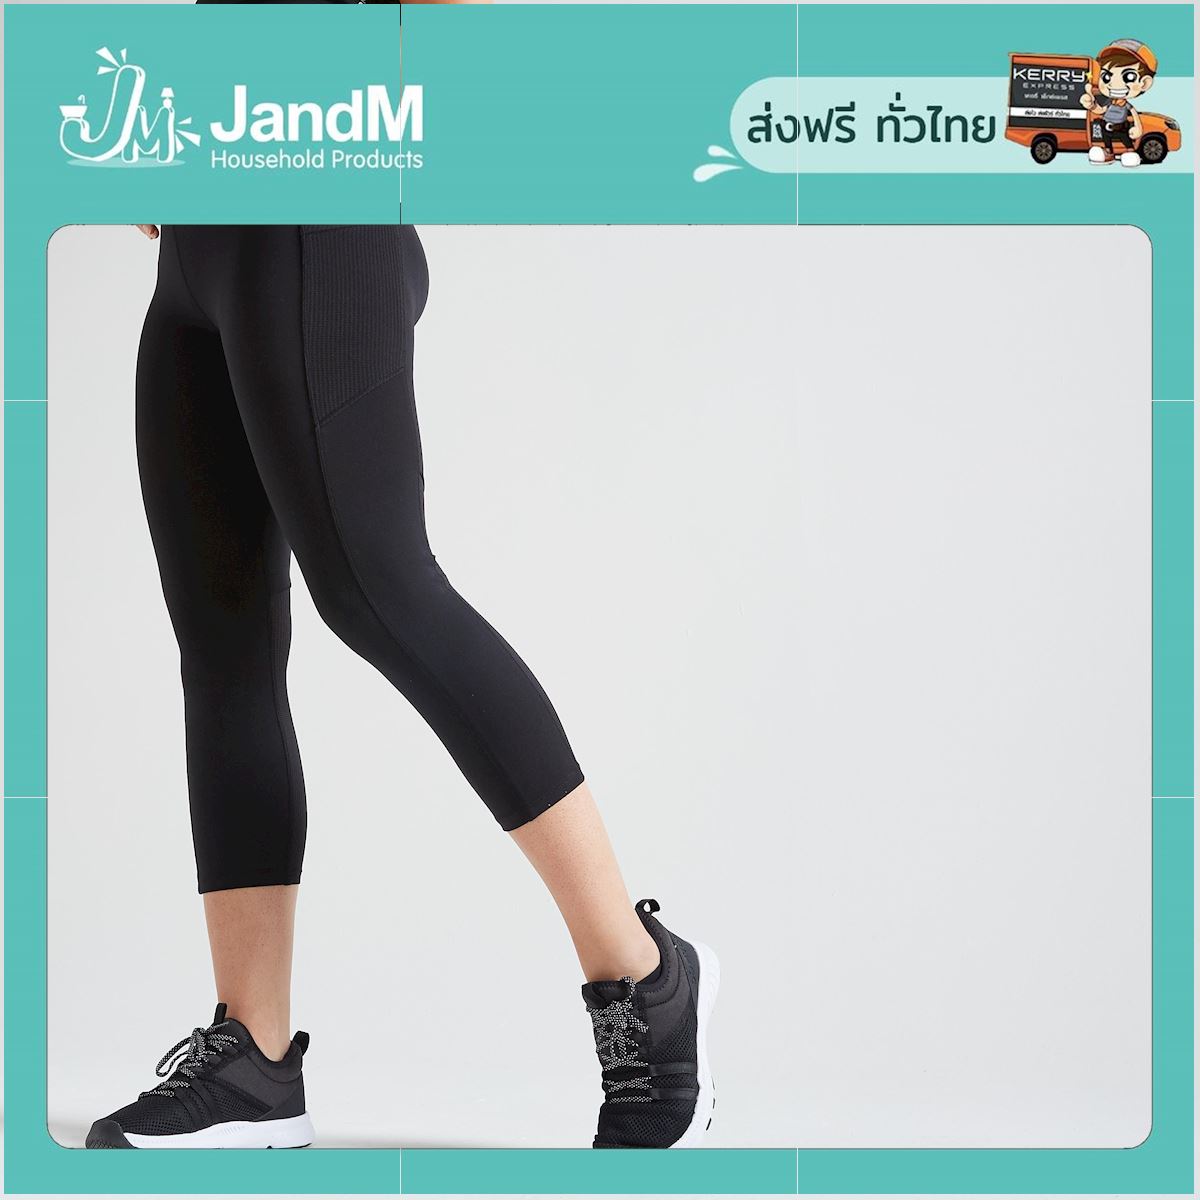 JandM กางเกงเลกกิ้งขา 7/8 ส่วนเพื่อการออกกำลังกายแบบคาร์ดิโอสำหรับผู้หญิงรุ่น 120 สีดำ ส่งkerry มีเก็บเงินปลายทาง